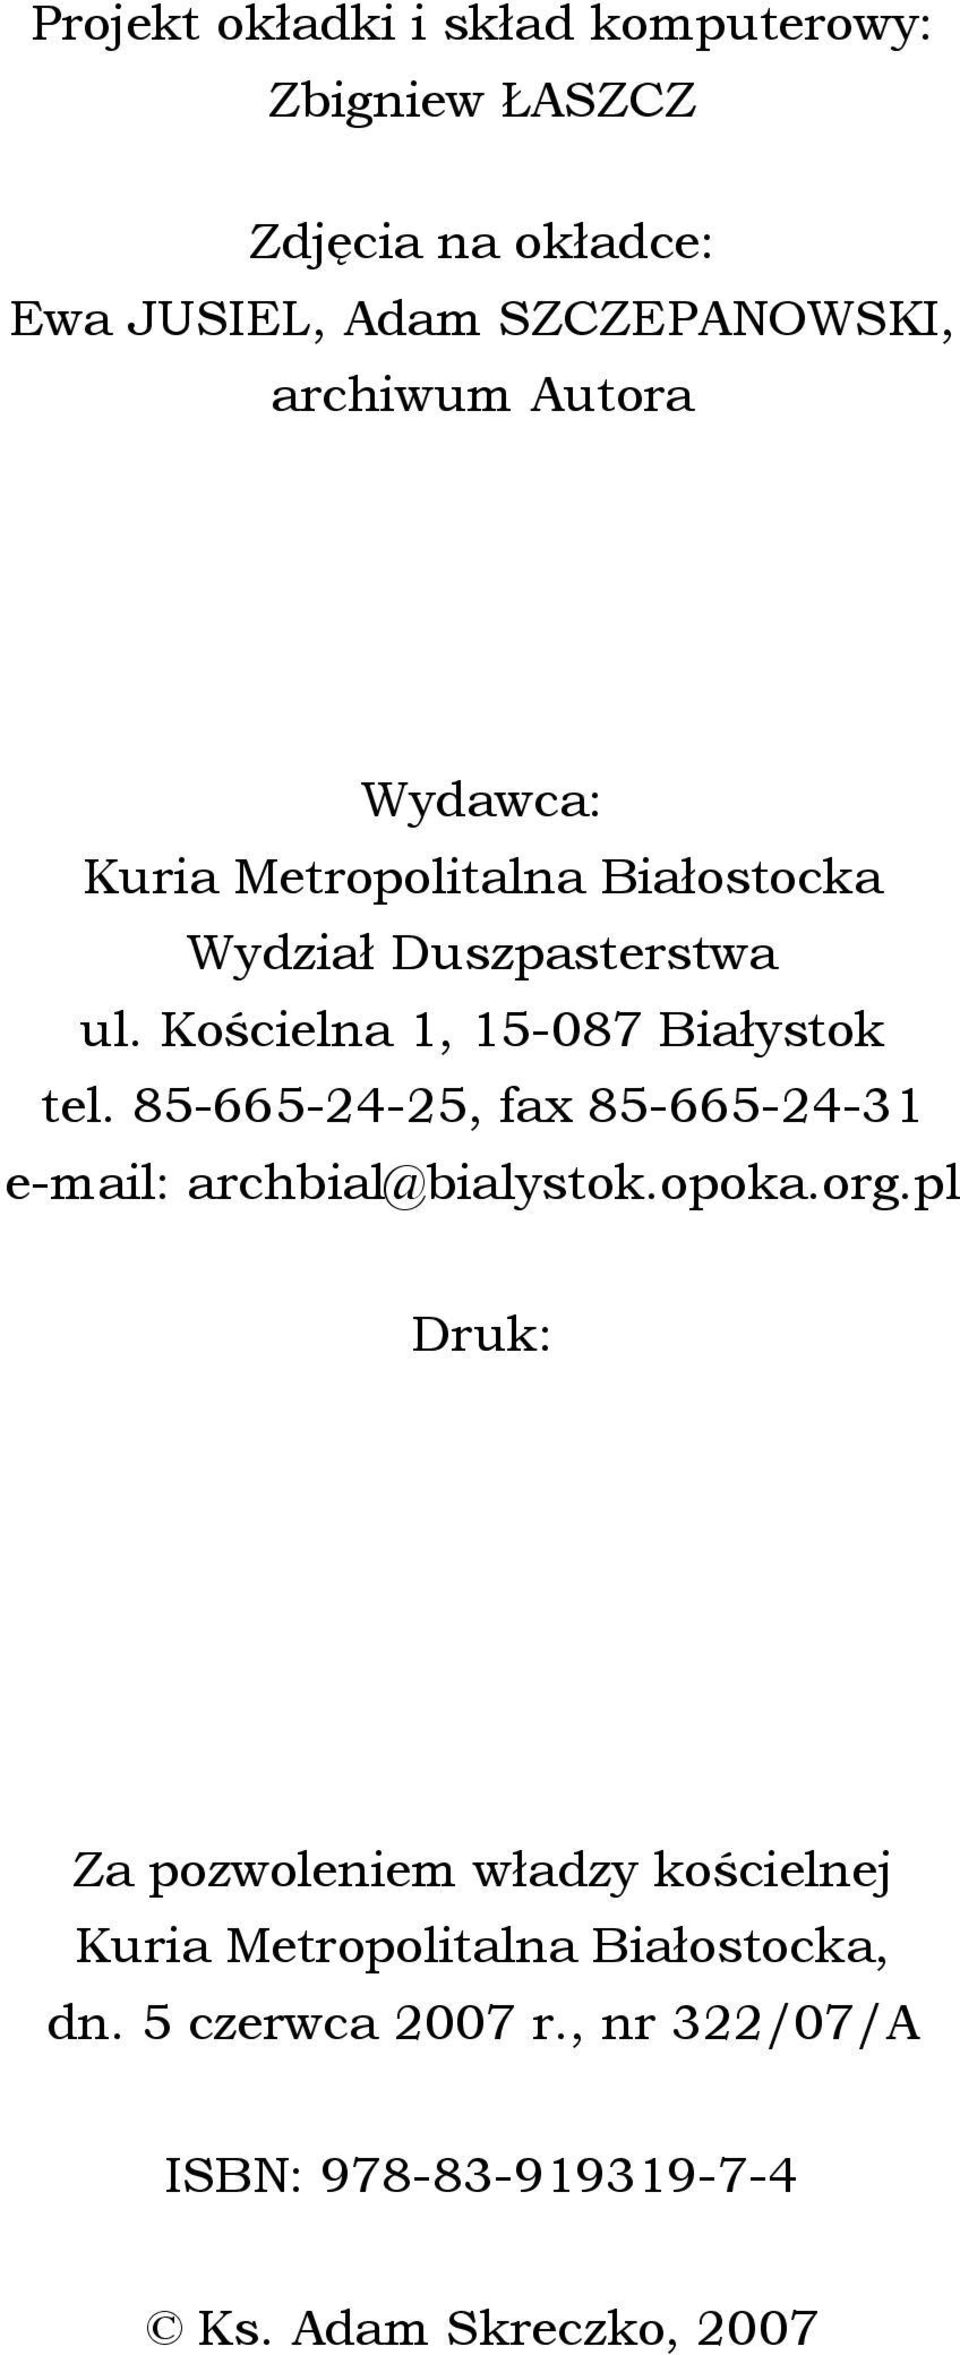 Kościelna 1, 15-087 Białystok tel. 85-665-24-25, fax 85-665-24-31 e-mail: archbial@bialystok.opoka.org.